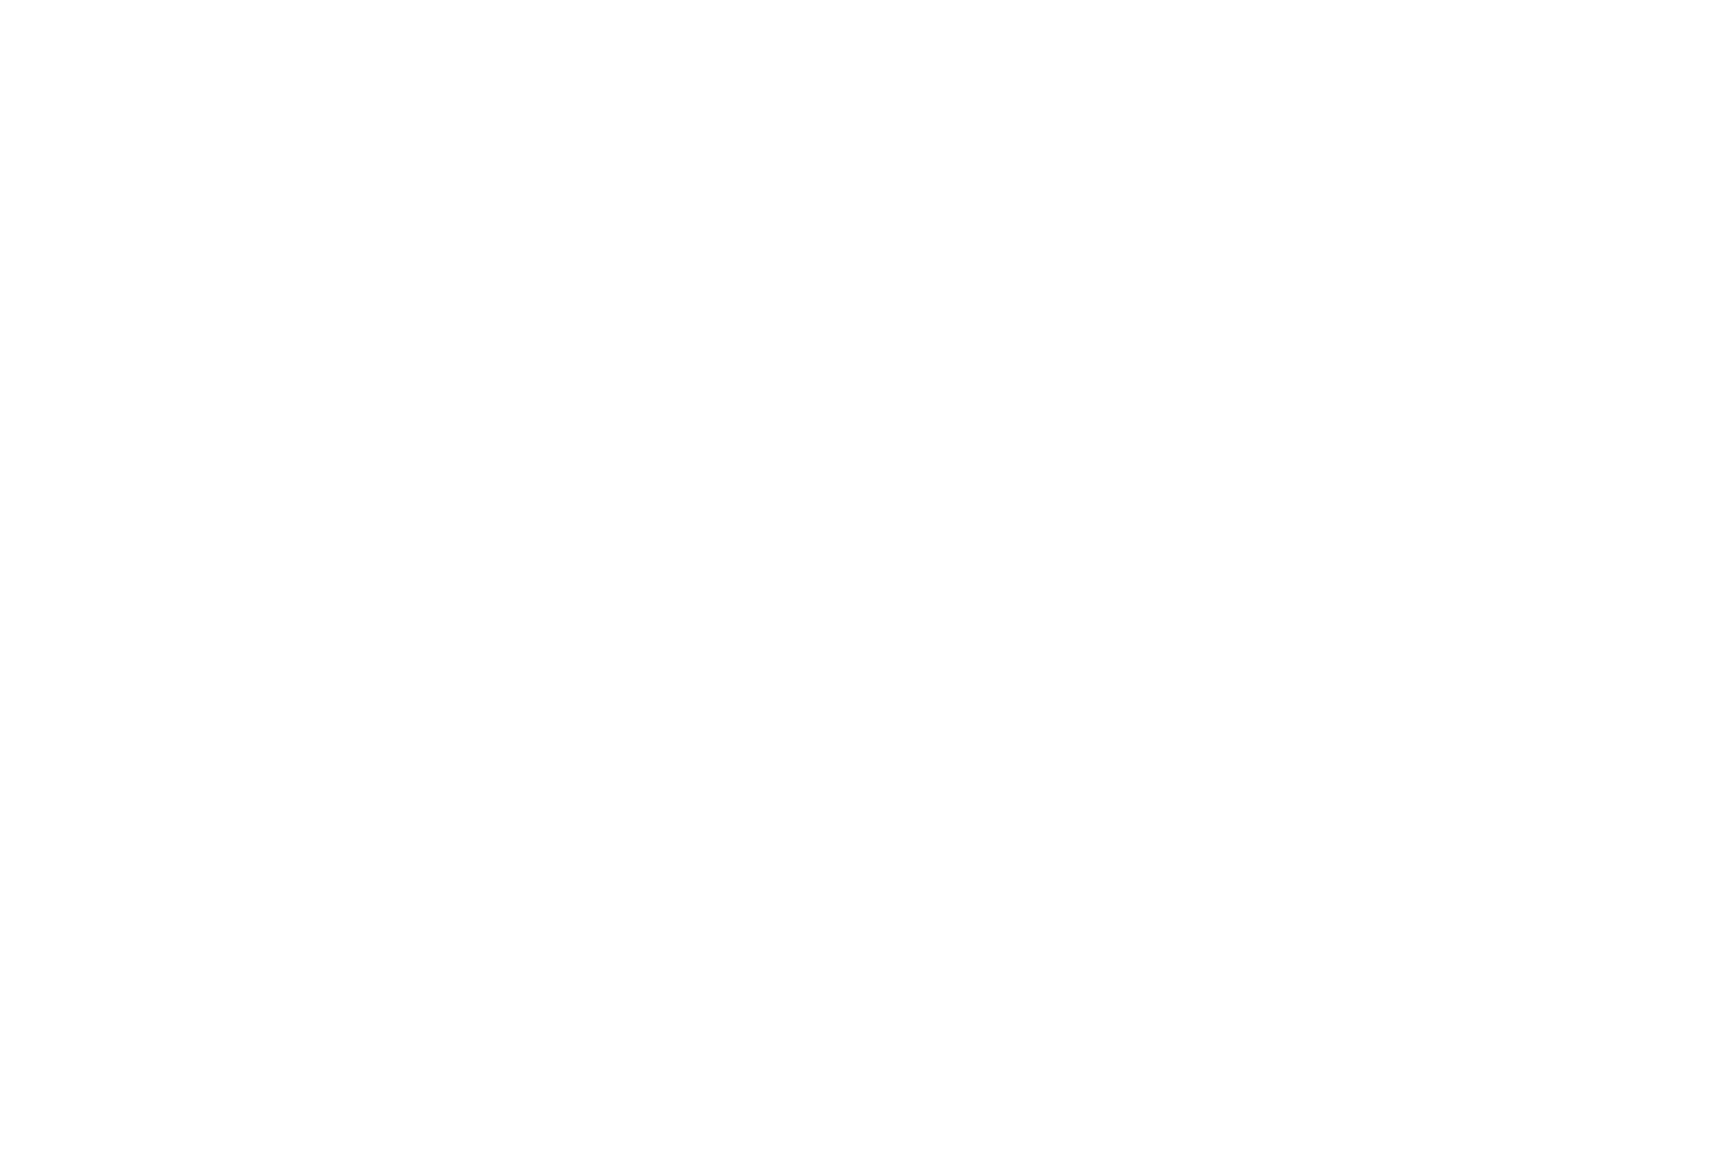 BEST DOCUMENTARY - Short Stop International Film Festival - 2017 (1)